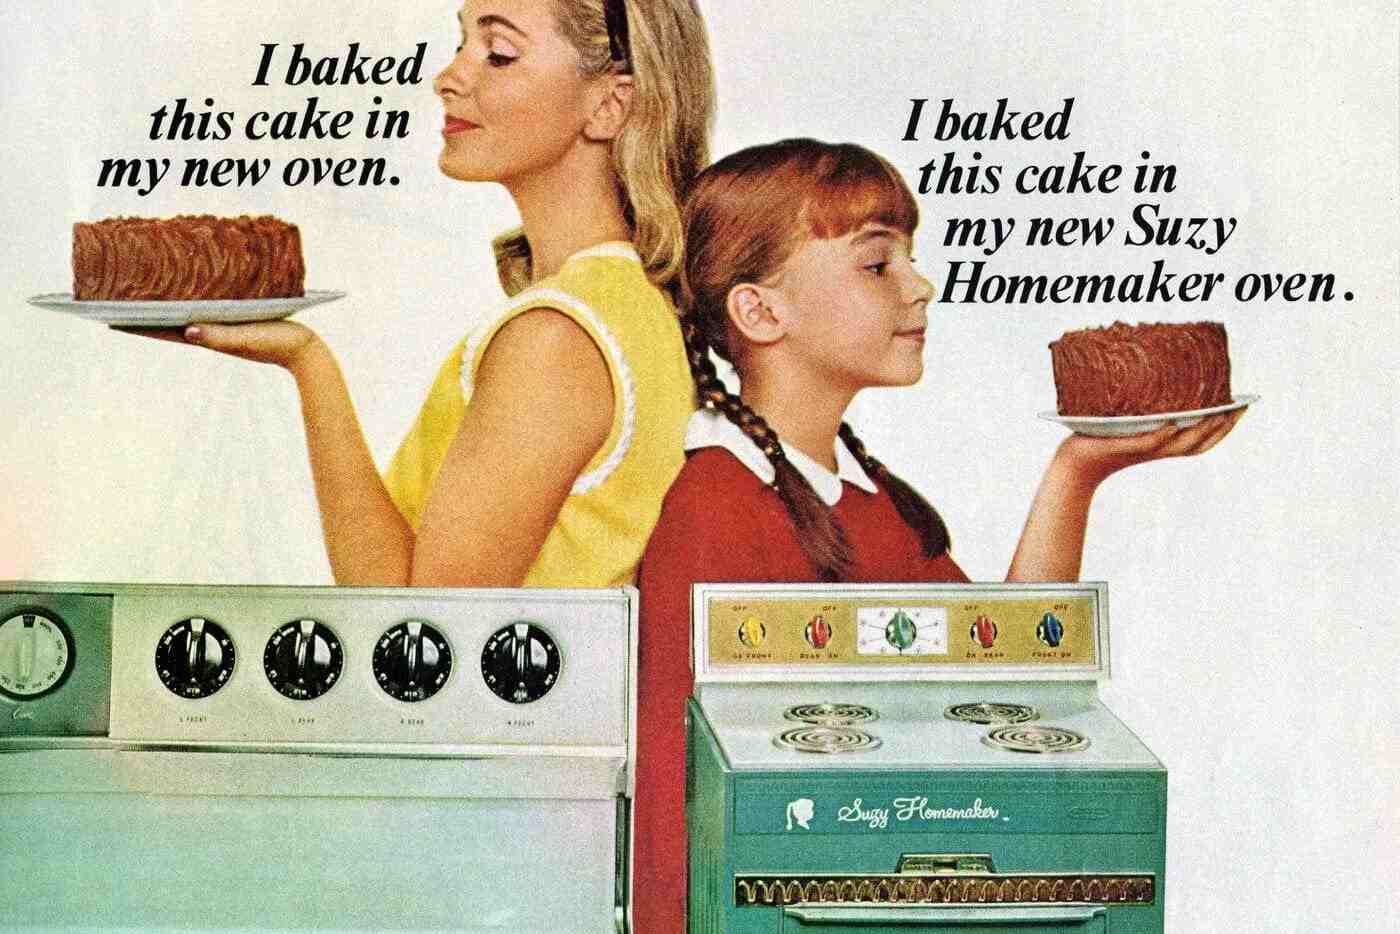 Suzy Homemaker Oven Ad